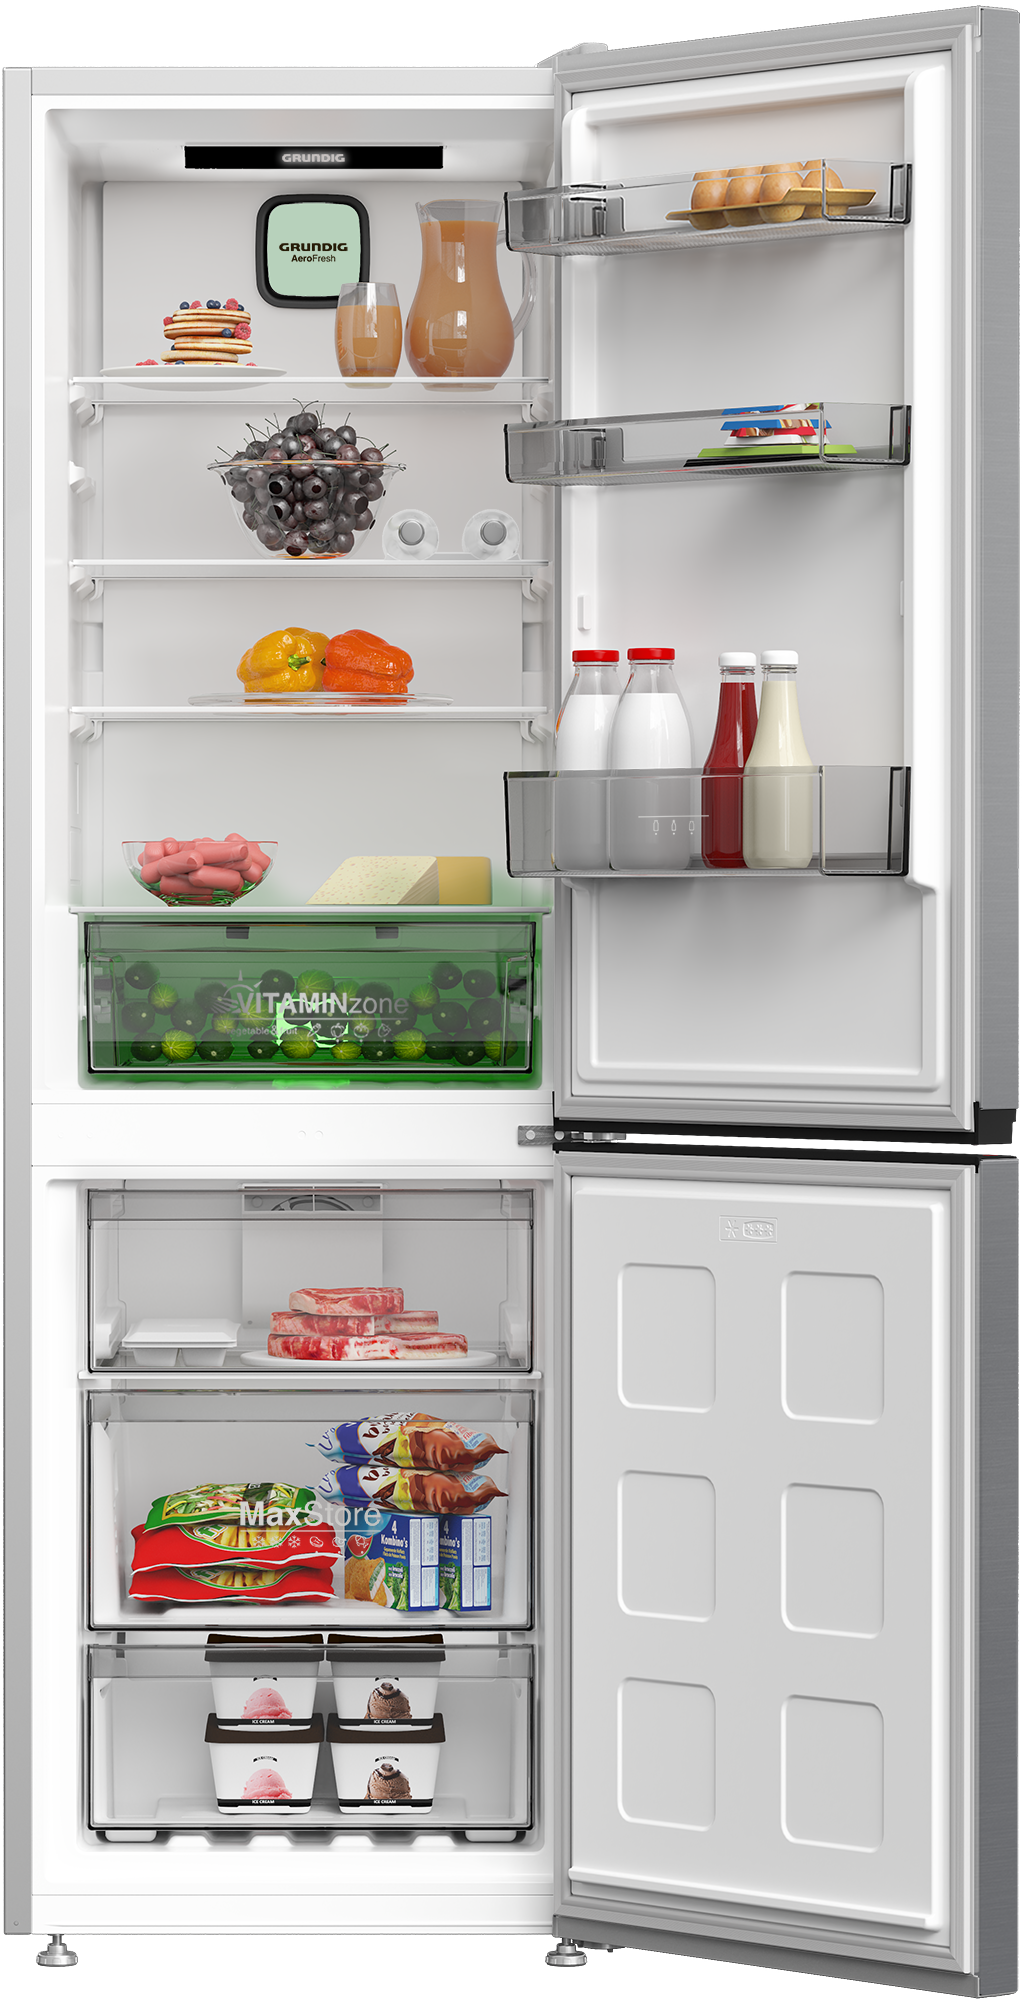 frigoríco de Grundig mantiene los alimentos frescos por más tiempo